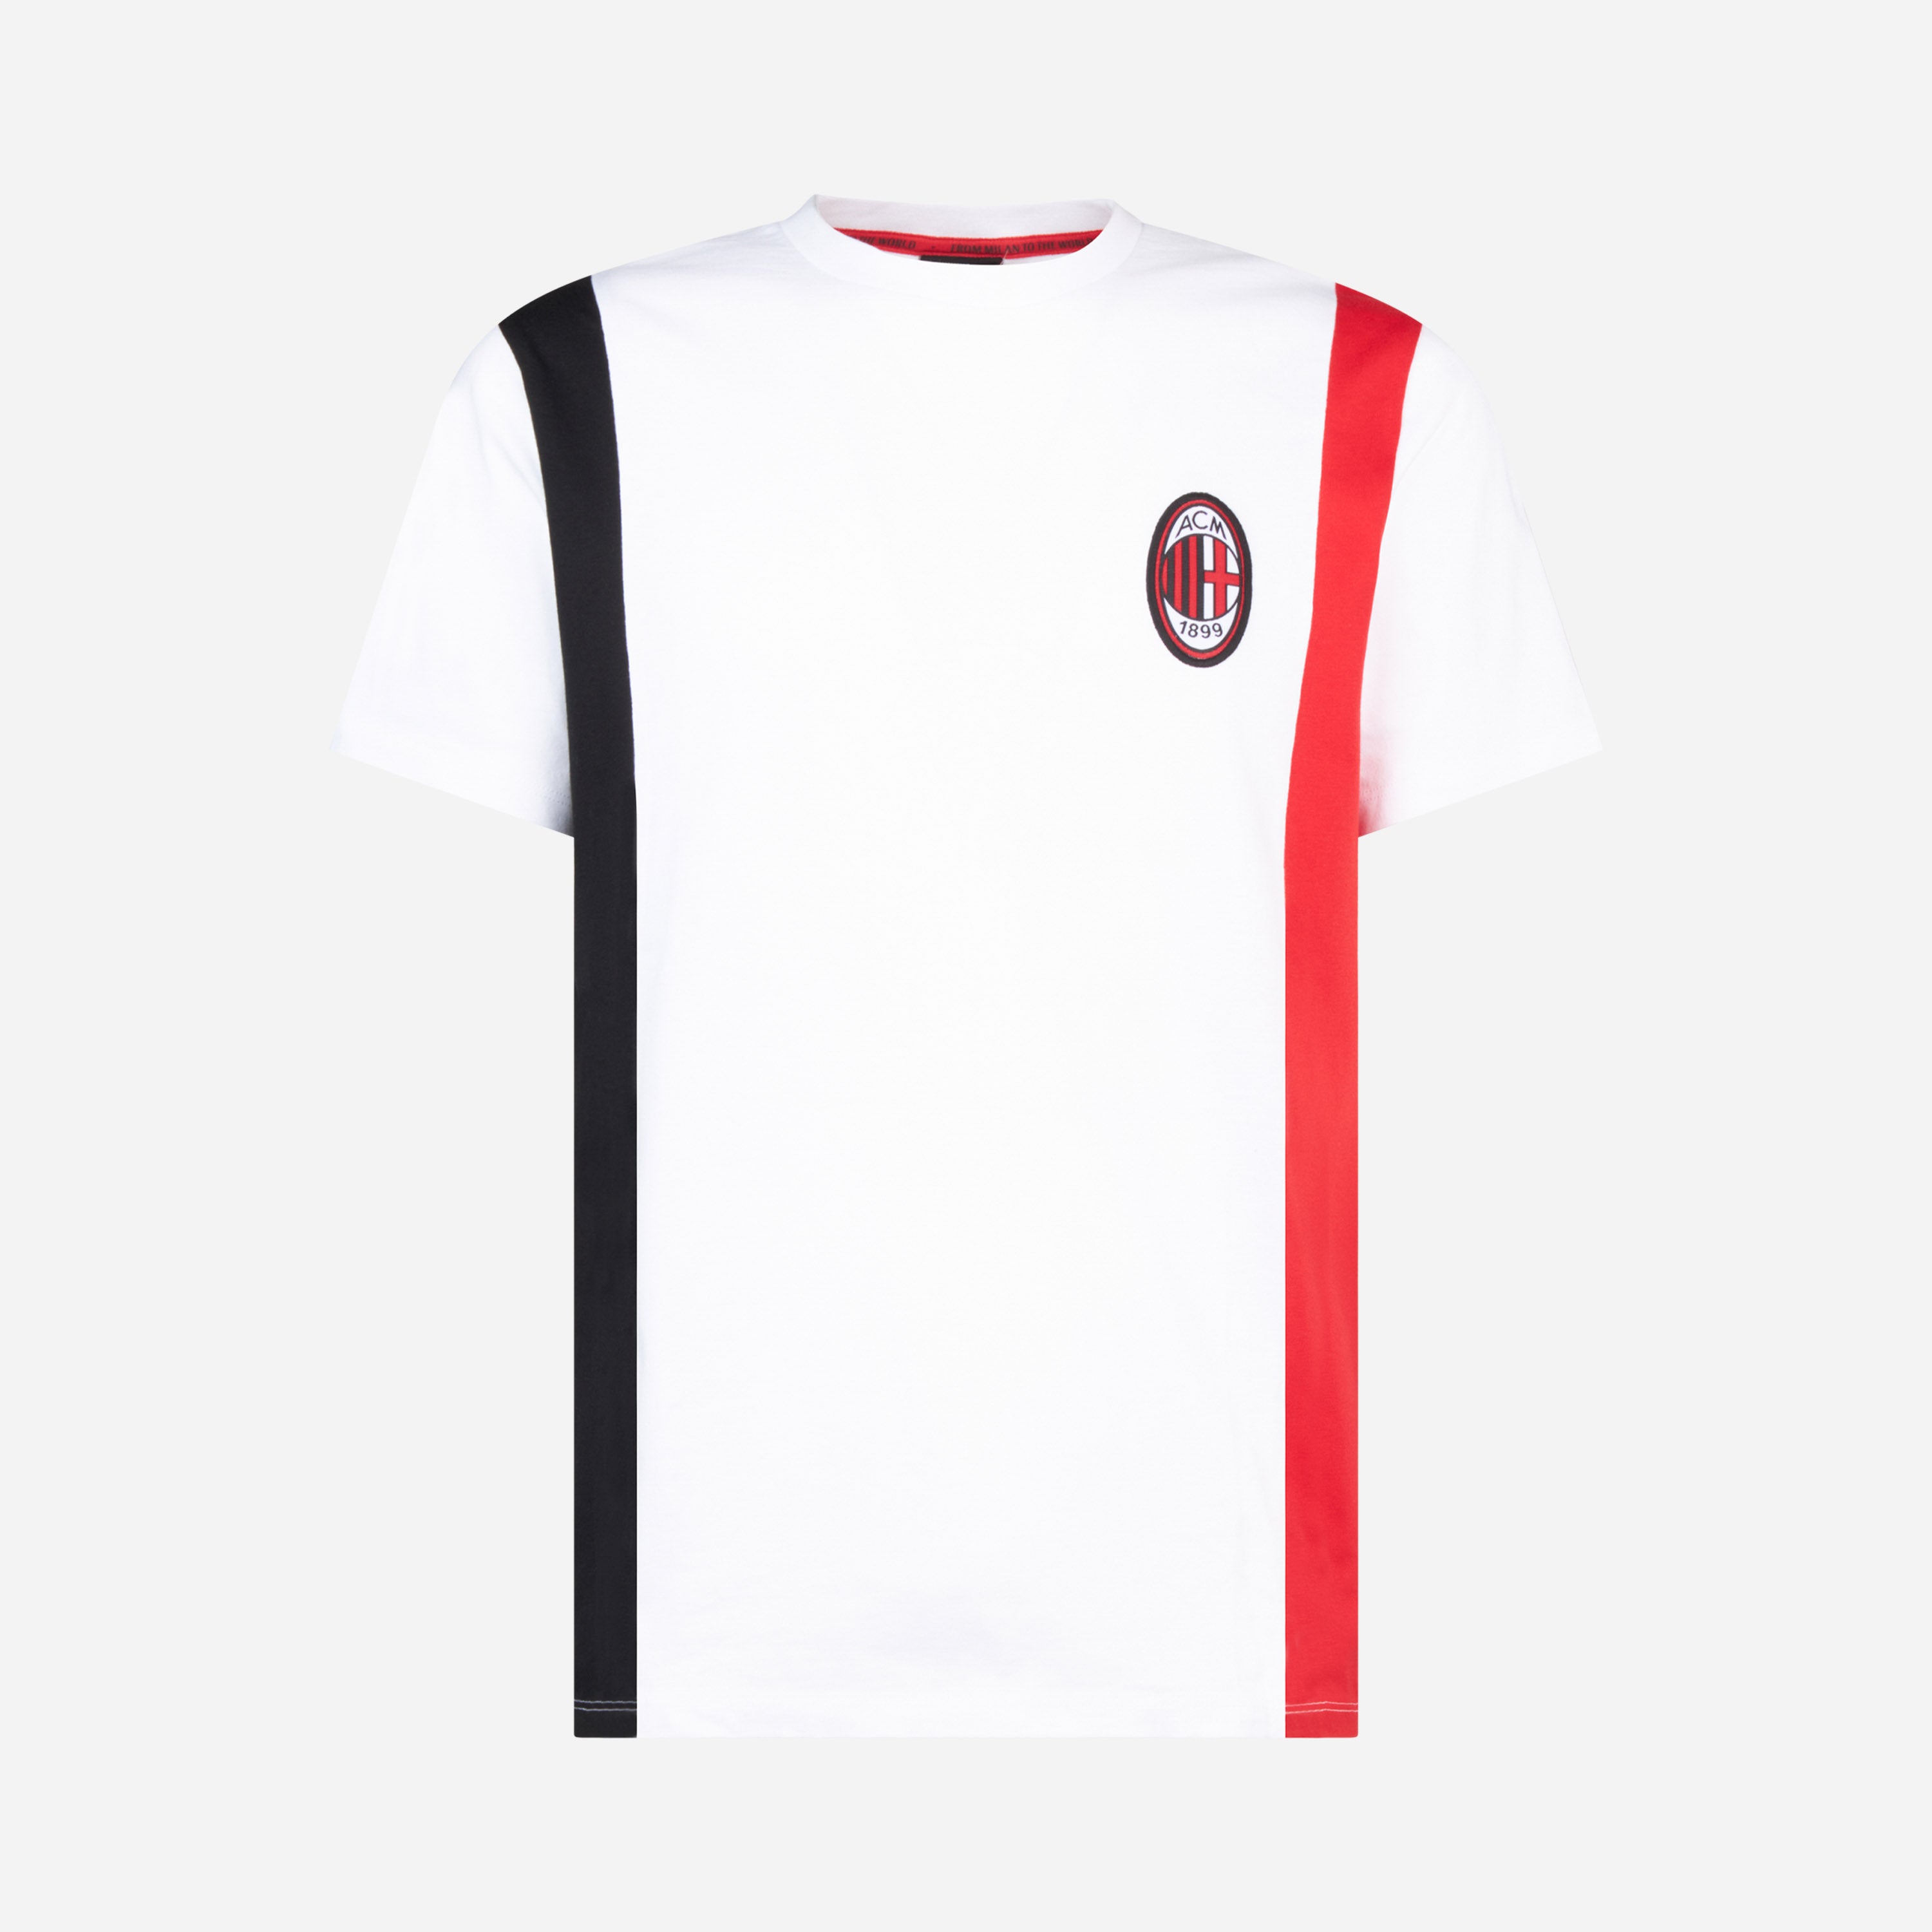 AC MILAN T-SHIRT WITH RED&BLACK DETAILS | AC Milan Store